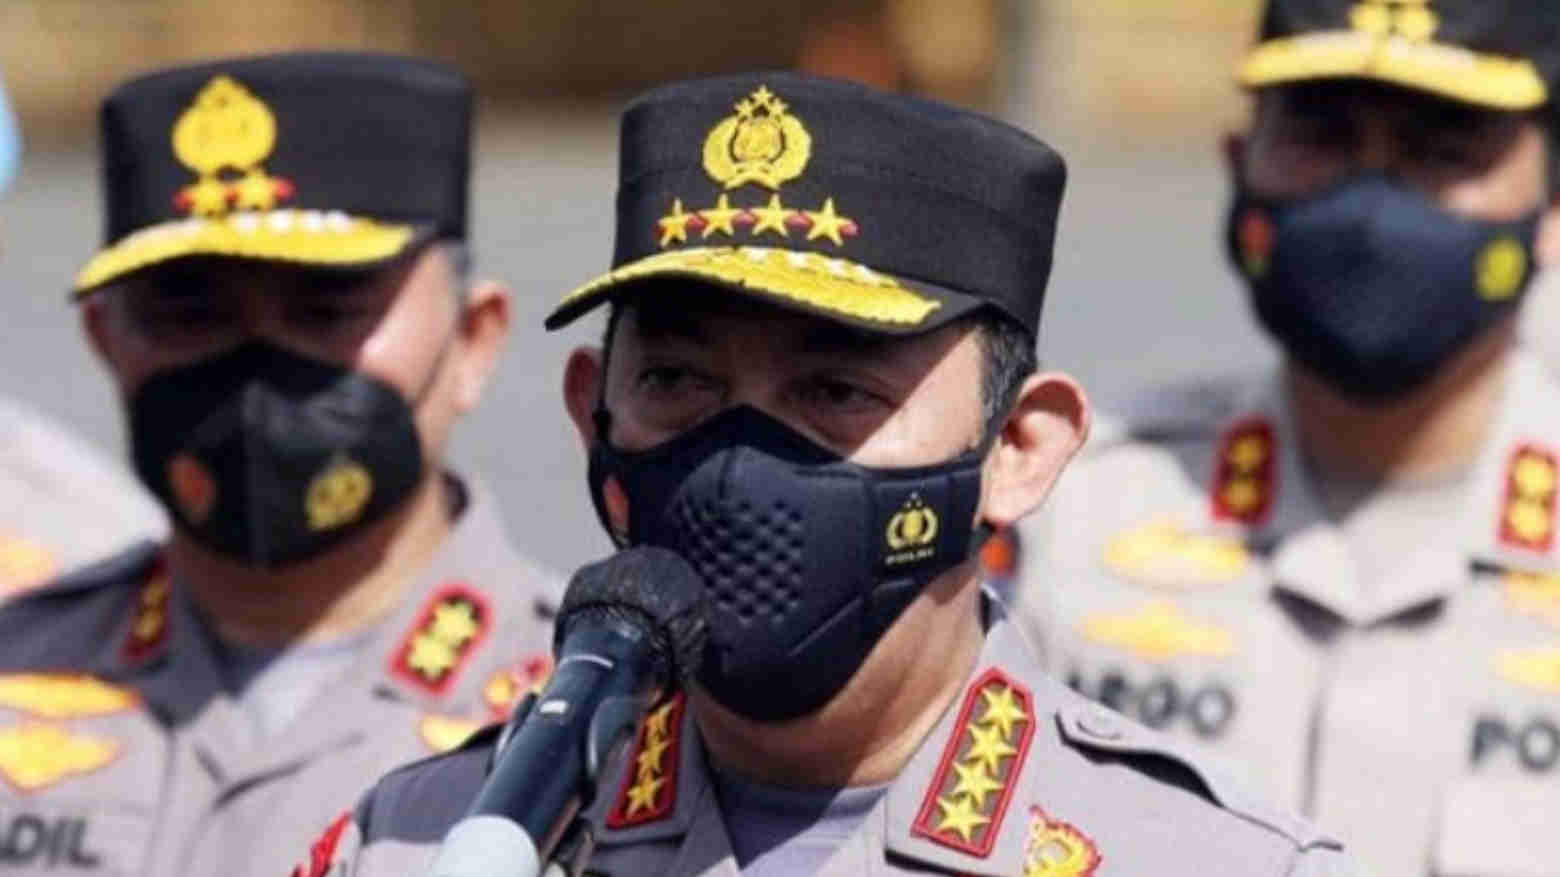 Kapolri Instruksikan Jajaran Polda dan Polres se-Indonesia Patroli Skala Besar